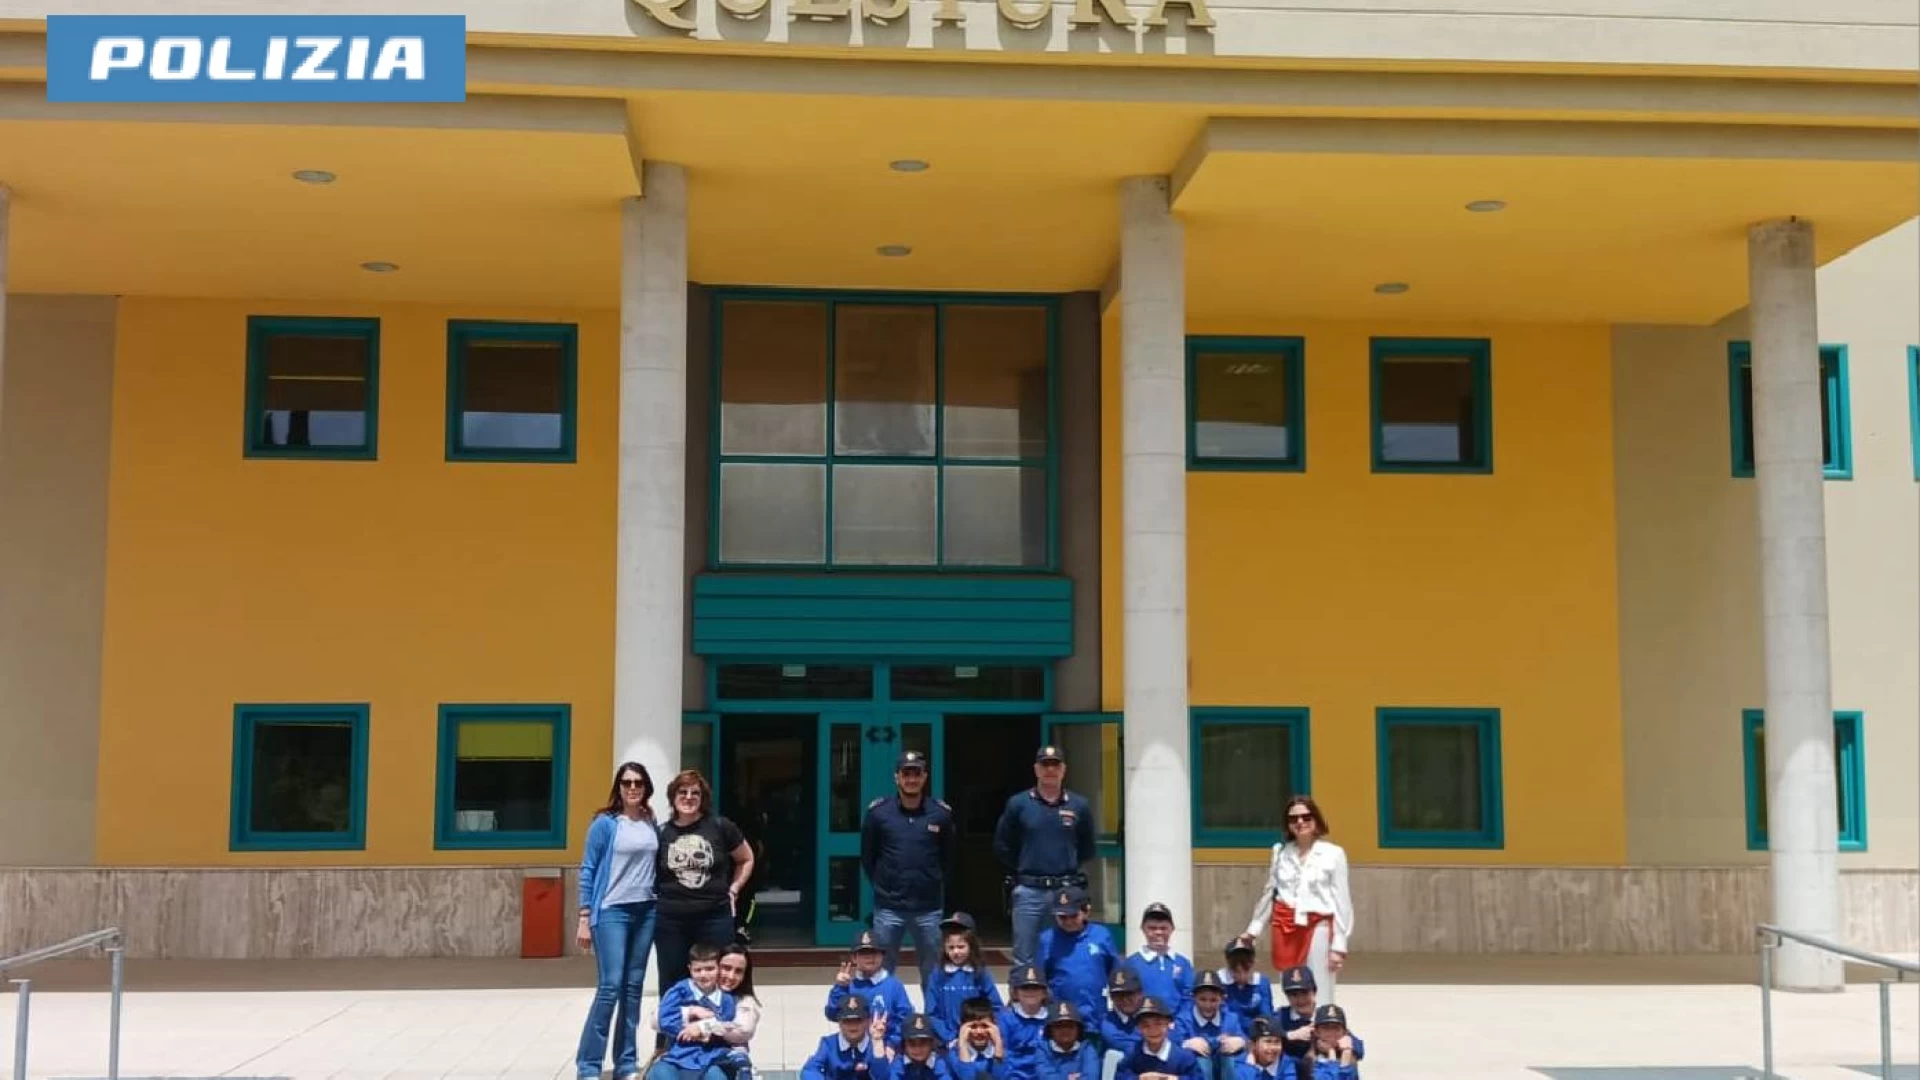 Isernia: visita in Questura per gli alunni della scuola San Leucio dell' Istituto Comprensivo Giovanni XXIII.